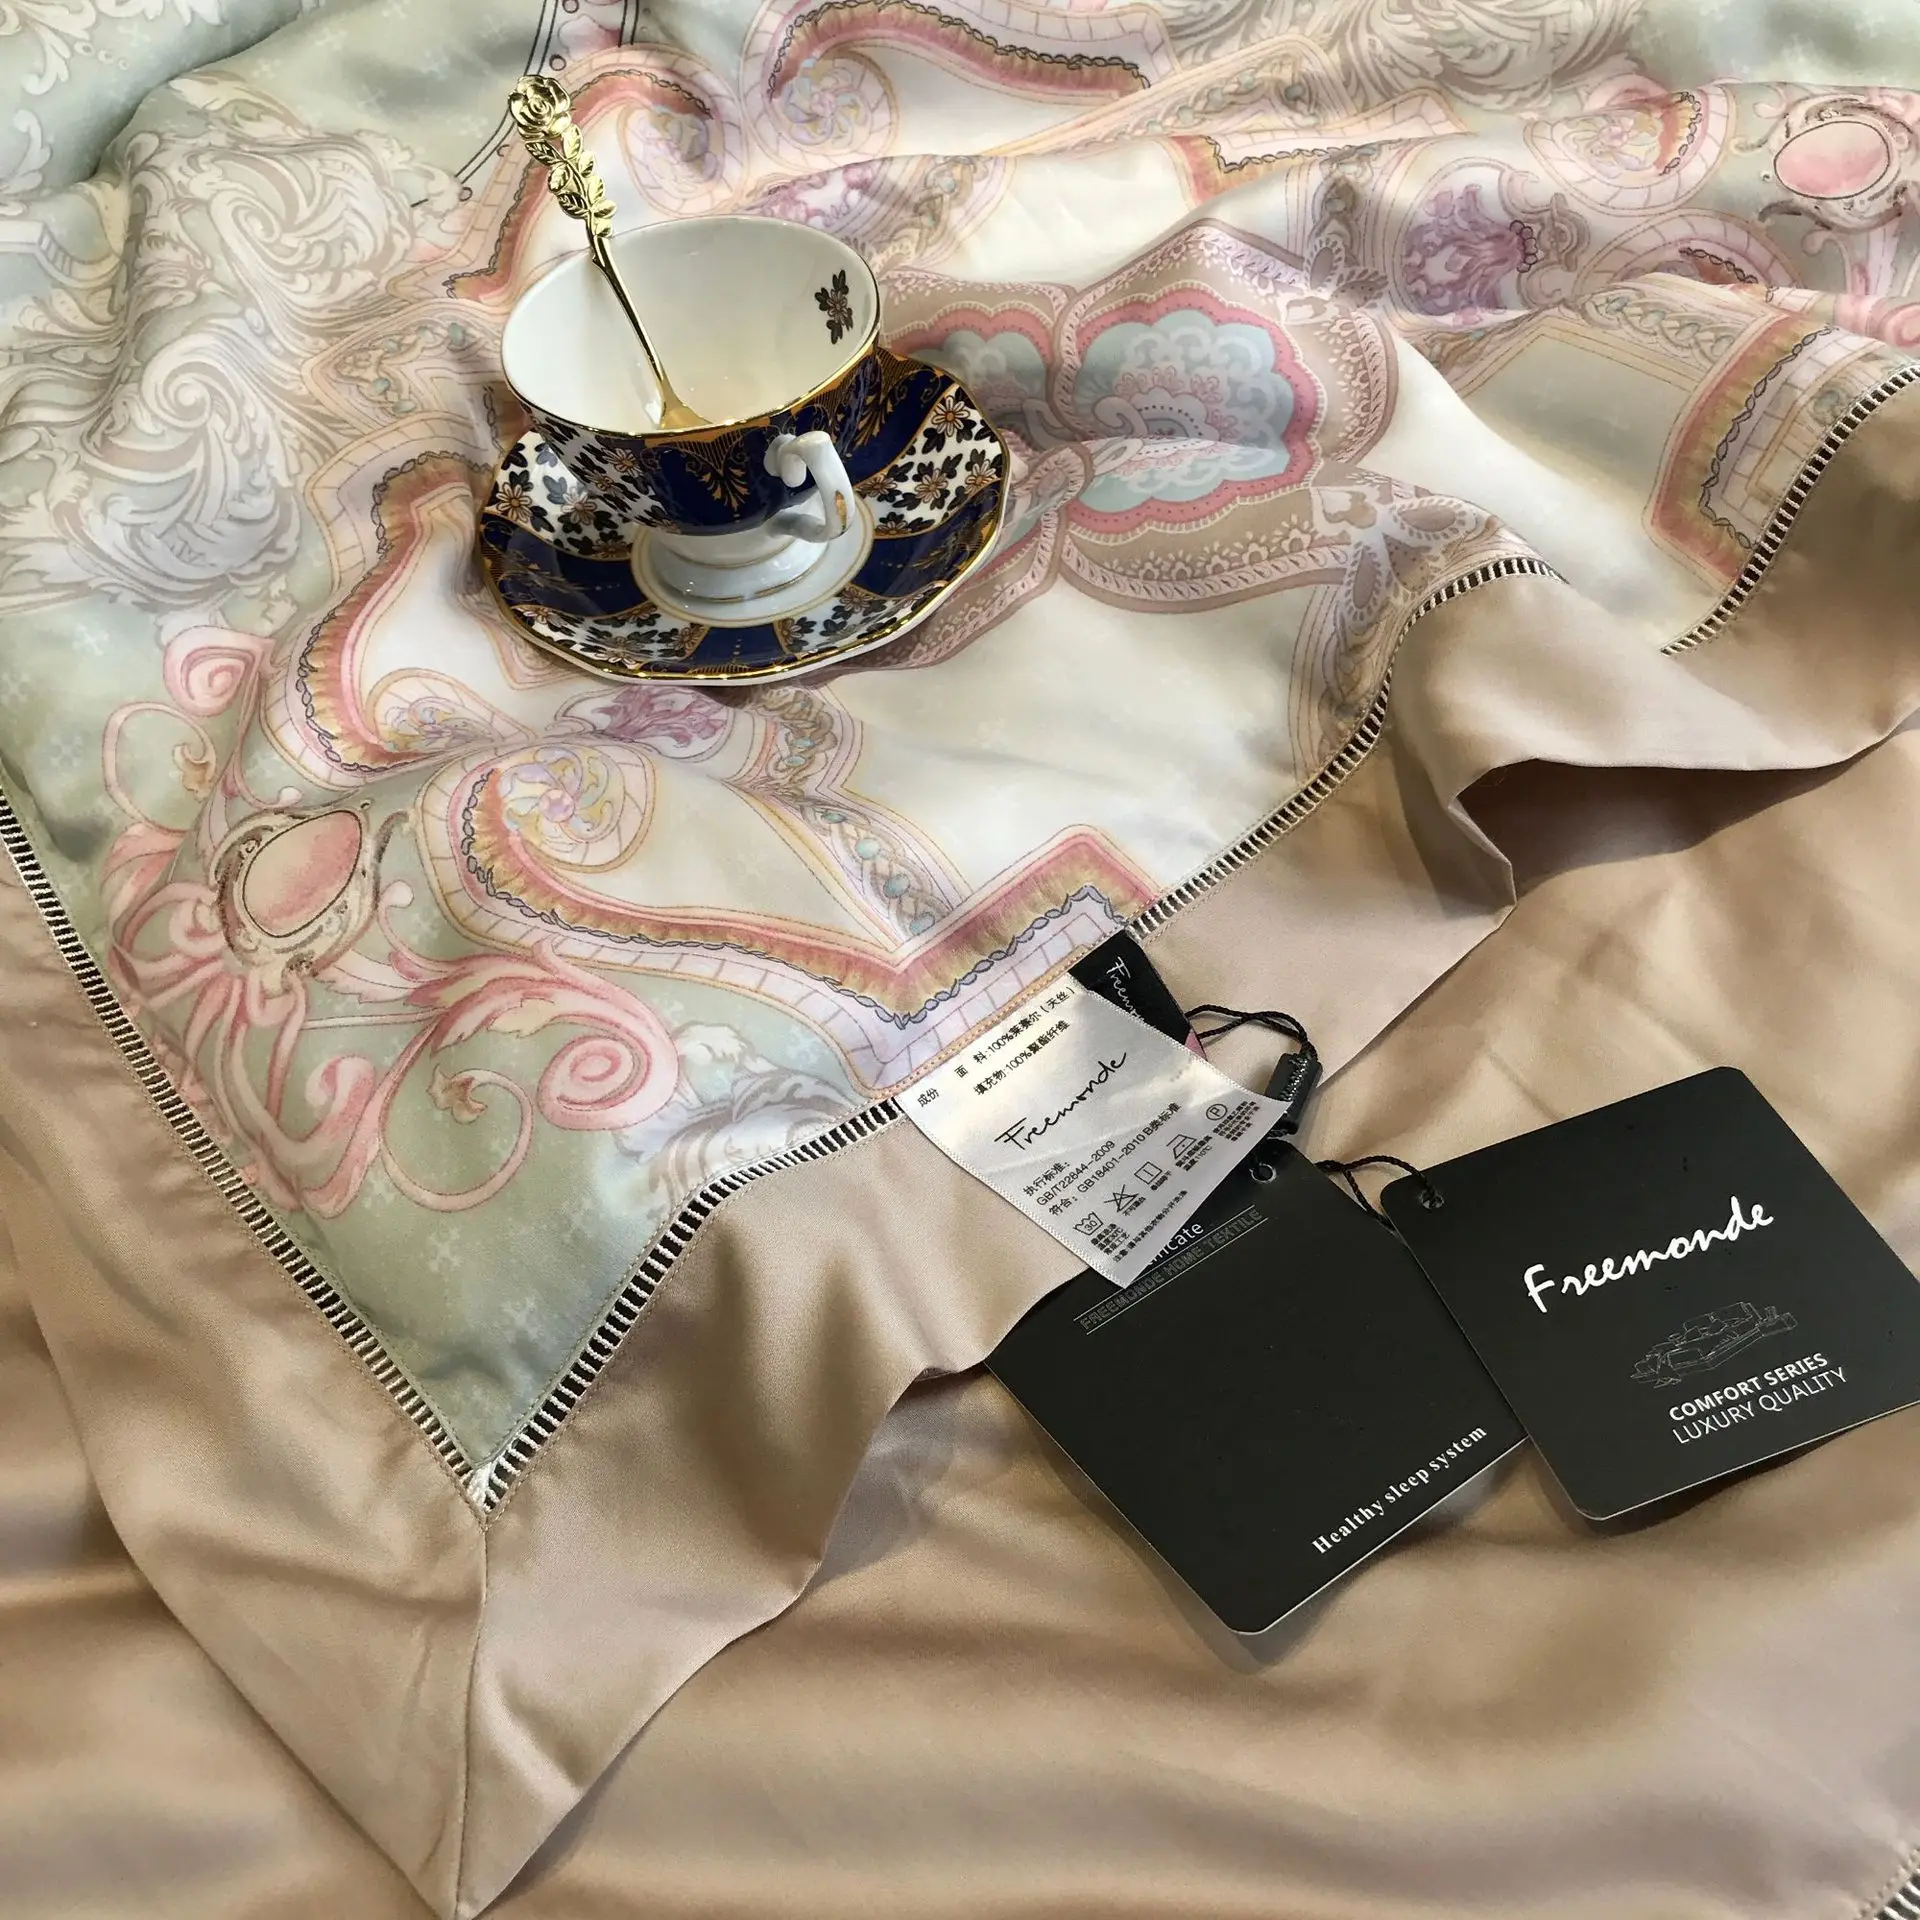 Abbiemao высококачественное постельное белье из хлопка Tencel, комплект из 4 предметов, кружевное шелковое постельное белье на весну/лето, размер queen/King